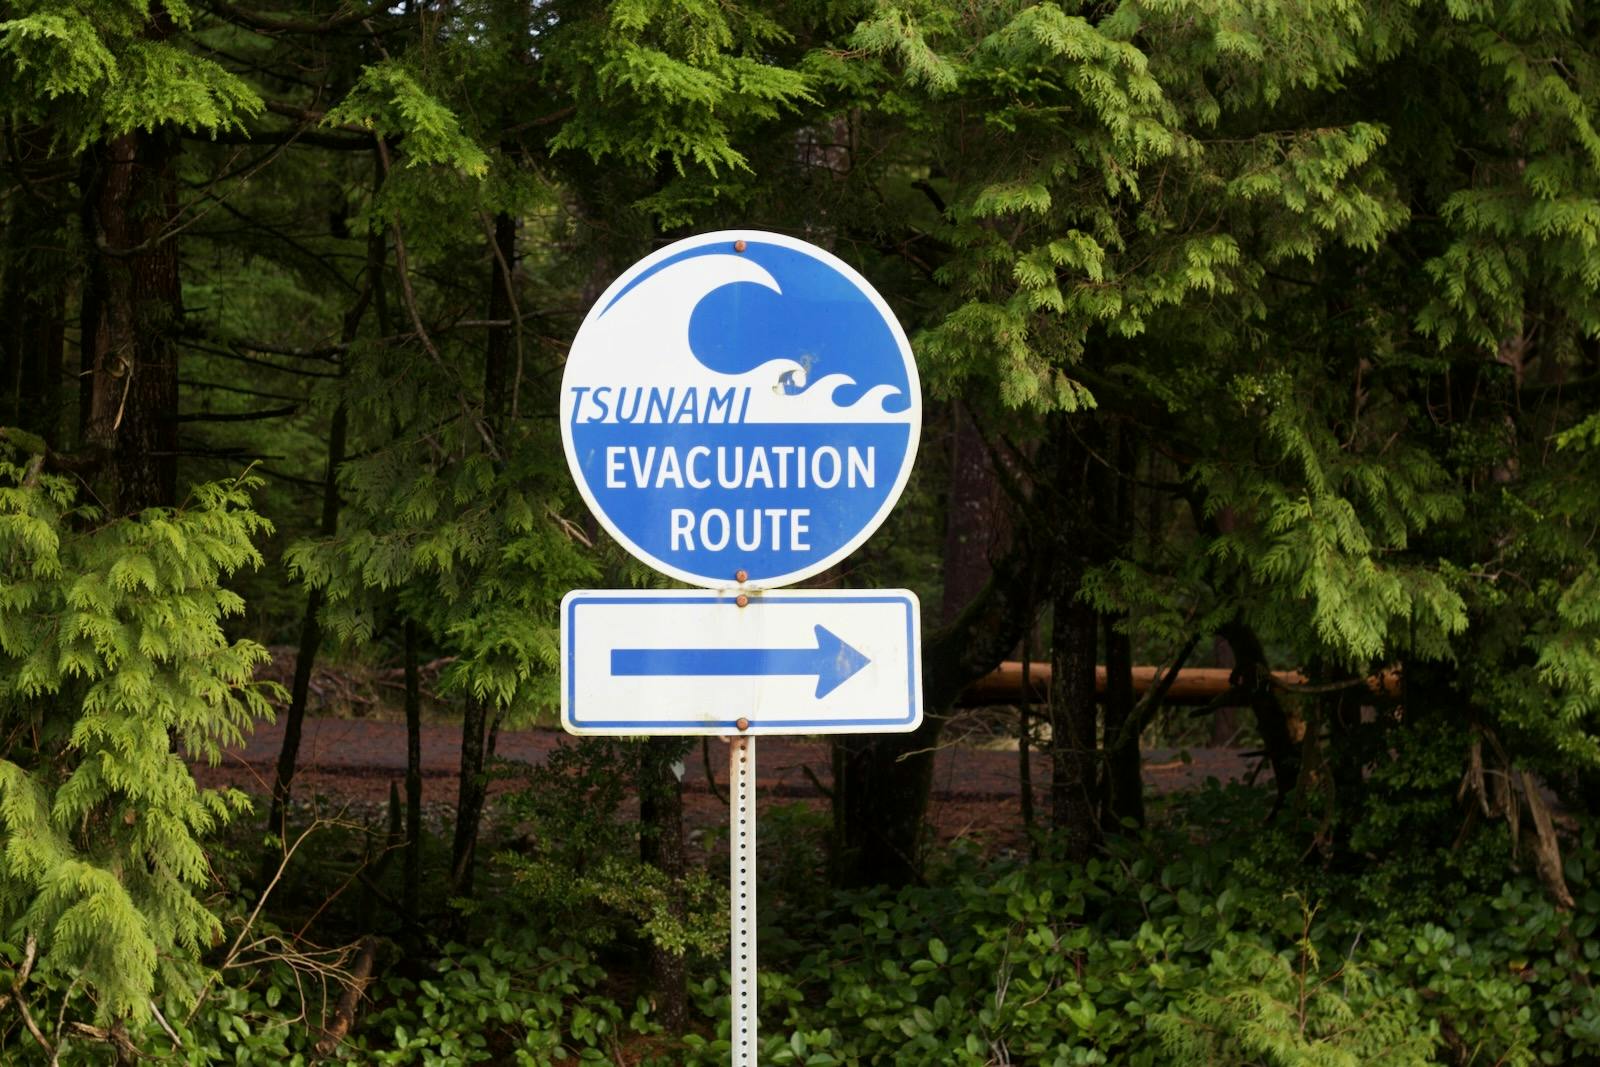 tsunami sign